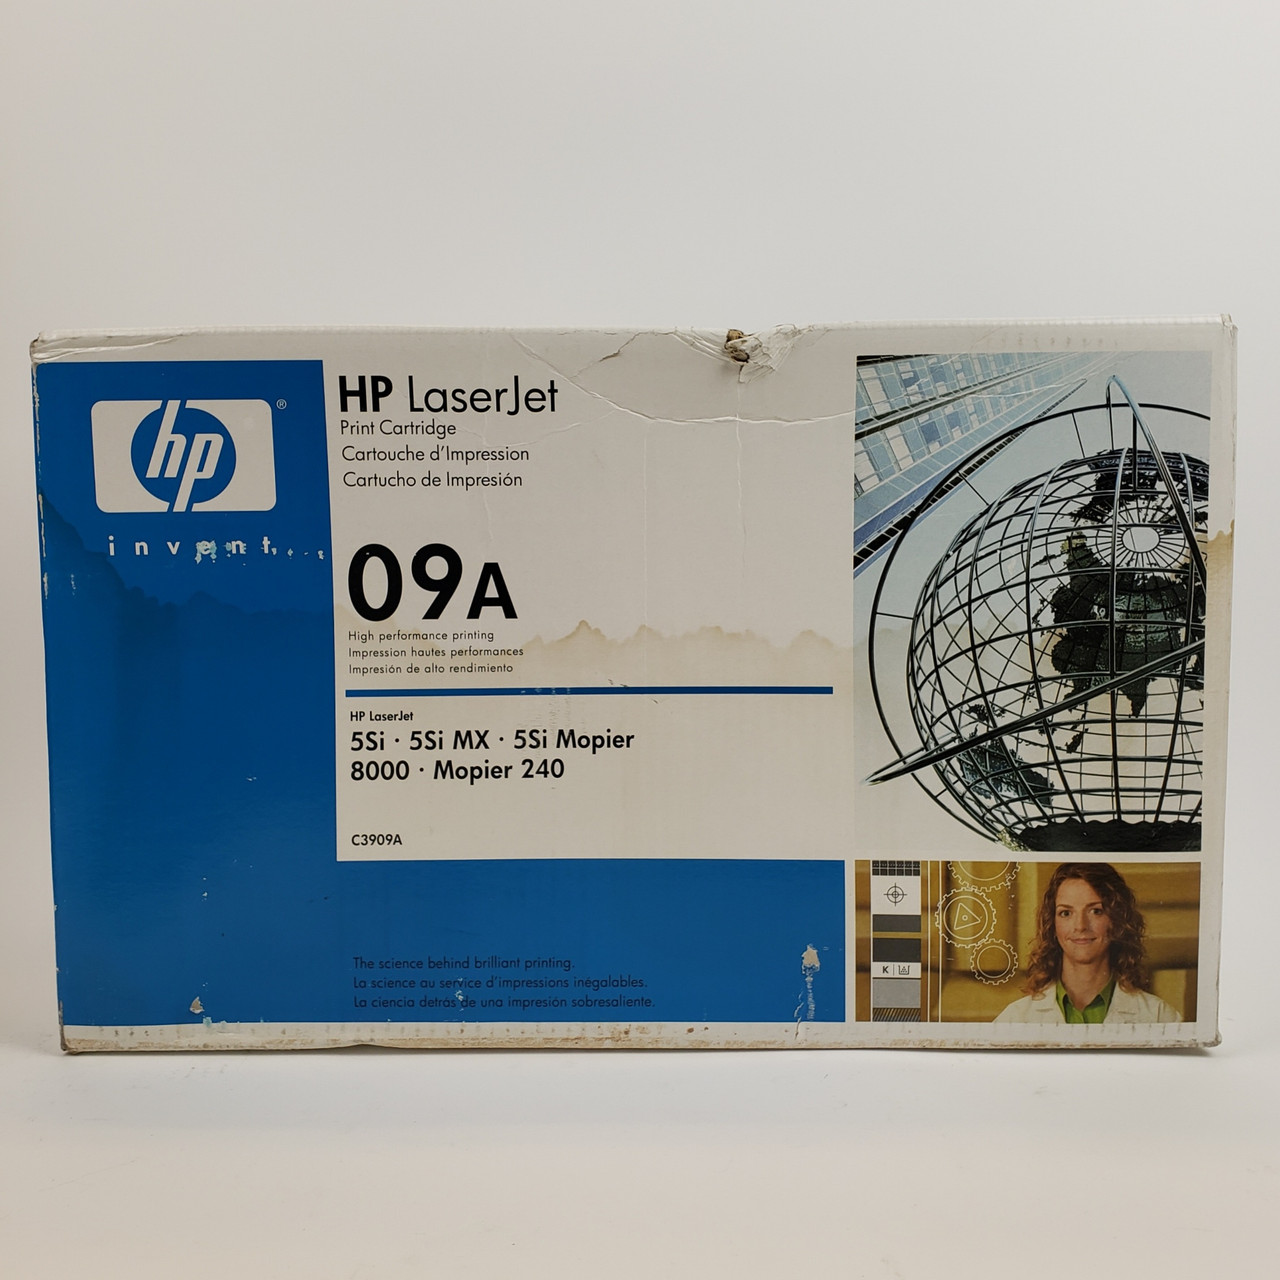 HP LaserJet 09A C3909A Black Toner Cartridge | Grade A